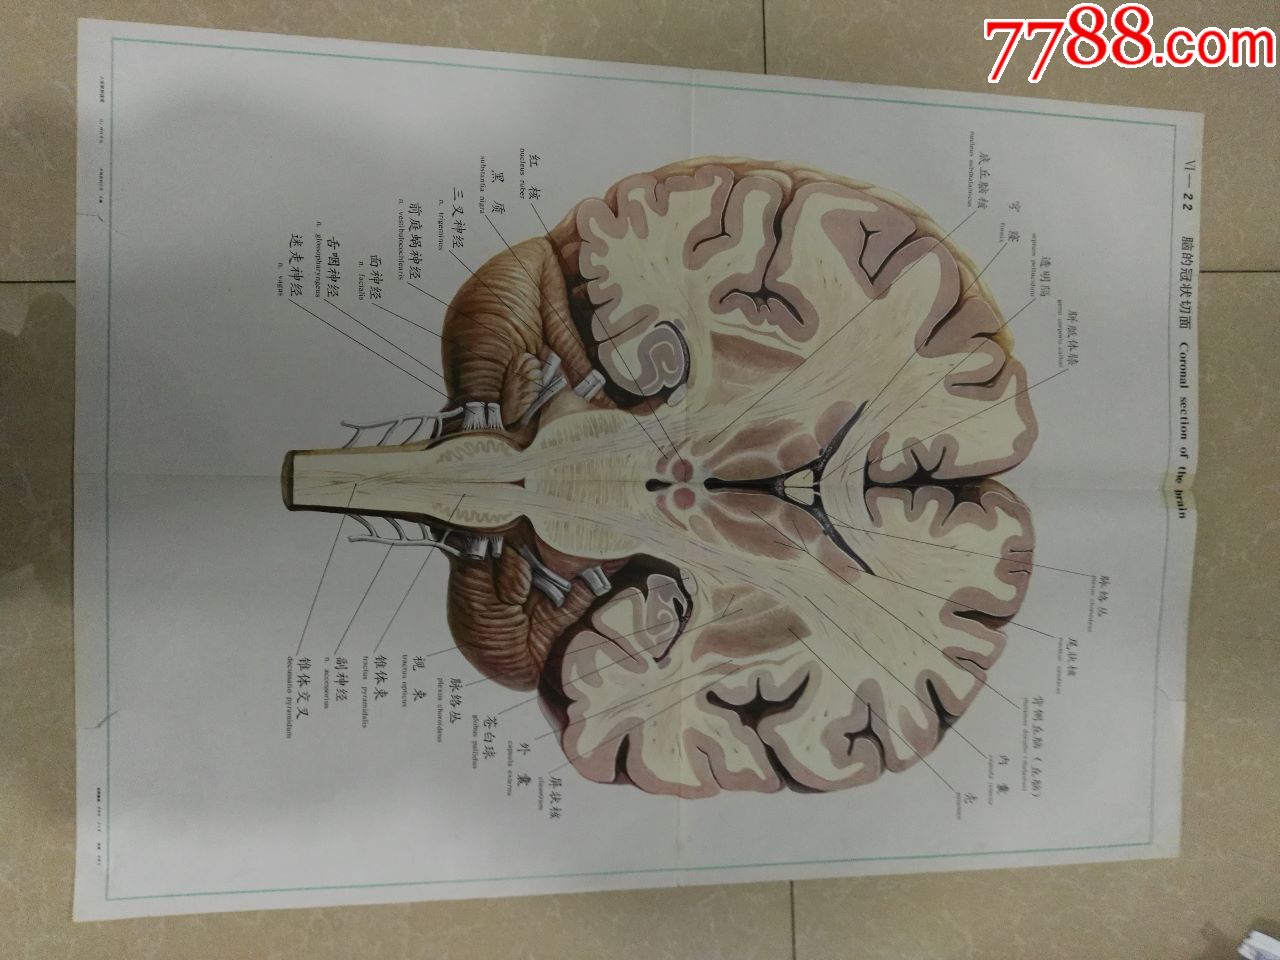 全开人体解剖挂图-脑的冠状切面-中国医科大学出品